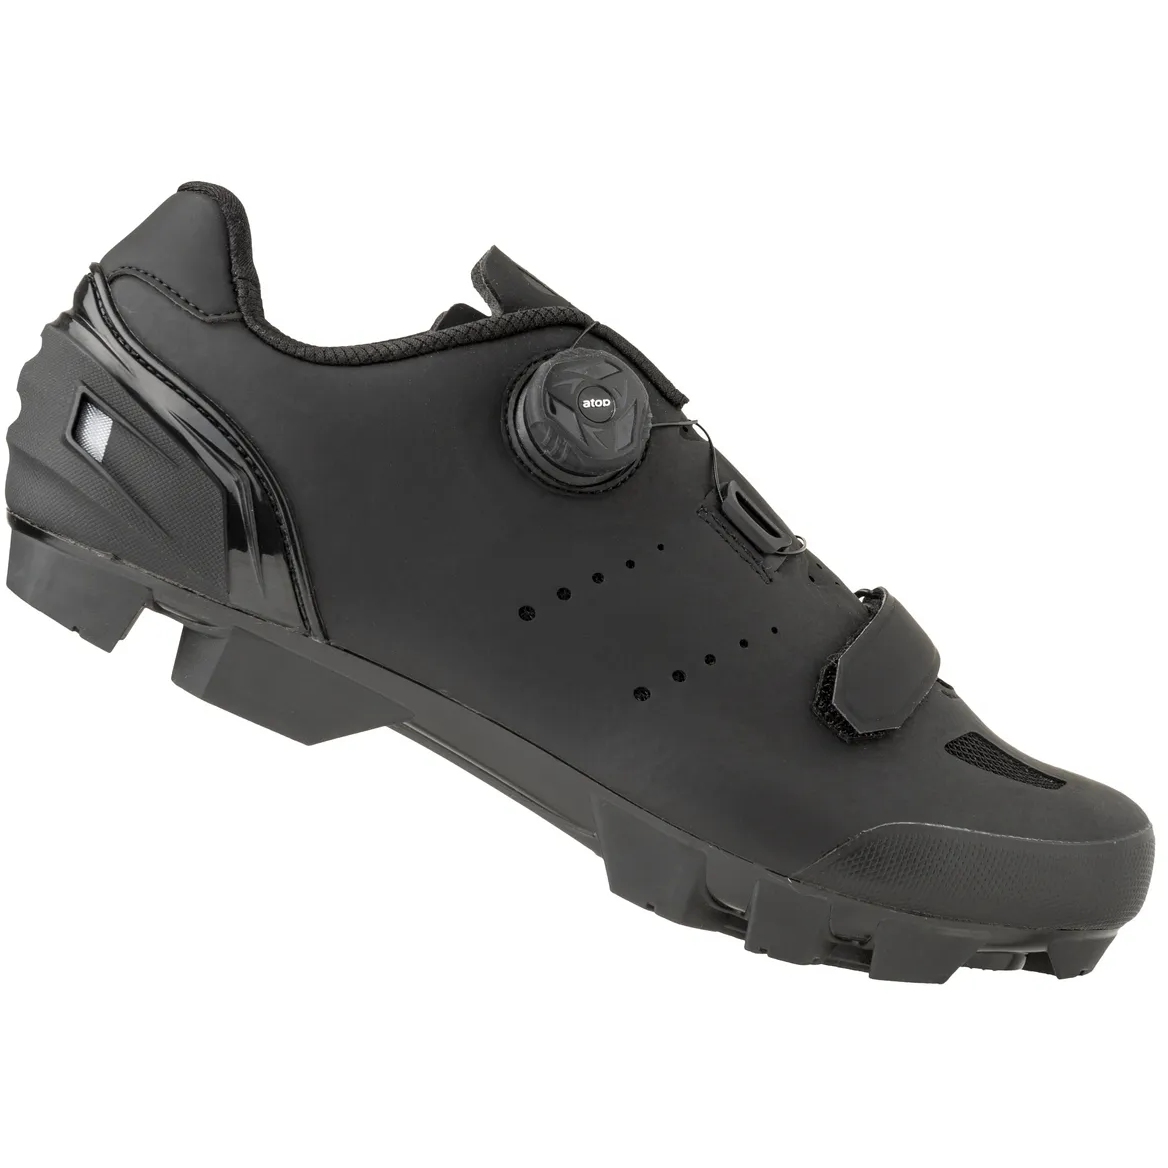 Produktbild von AGU Essential M610 MTB-Schuhe - schwarz